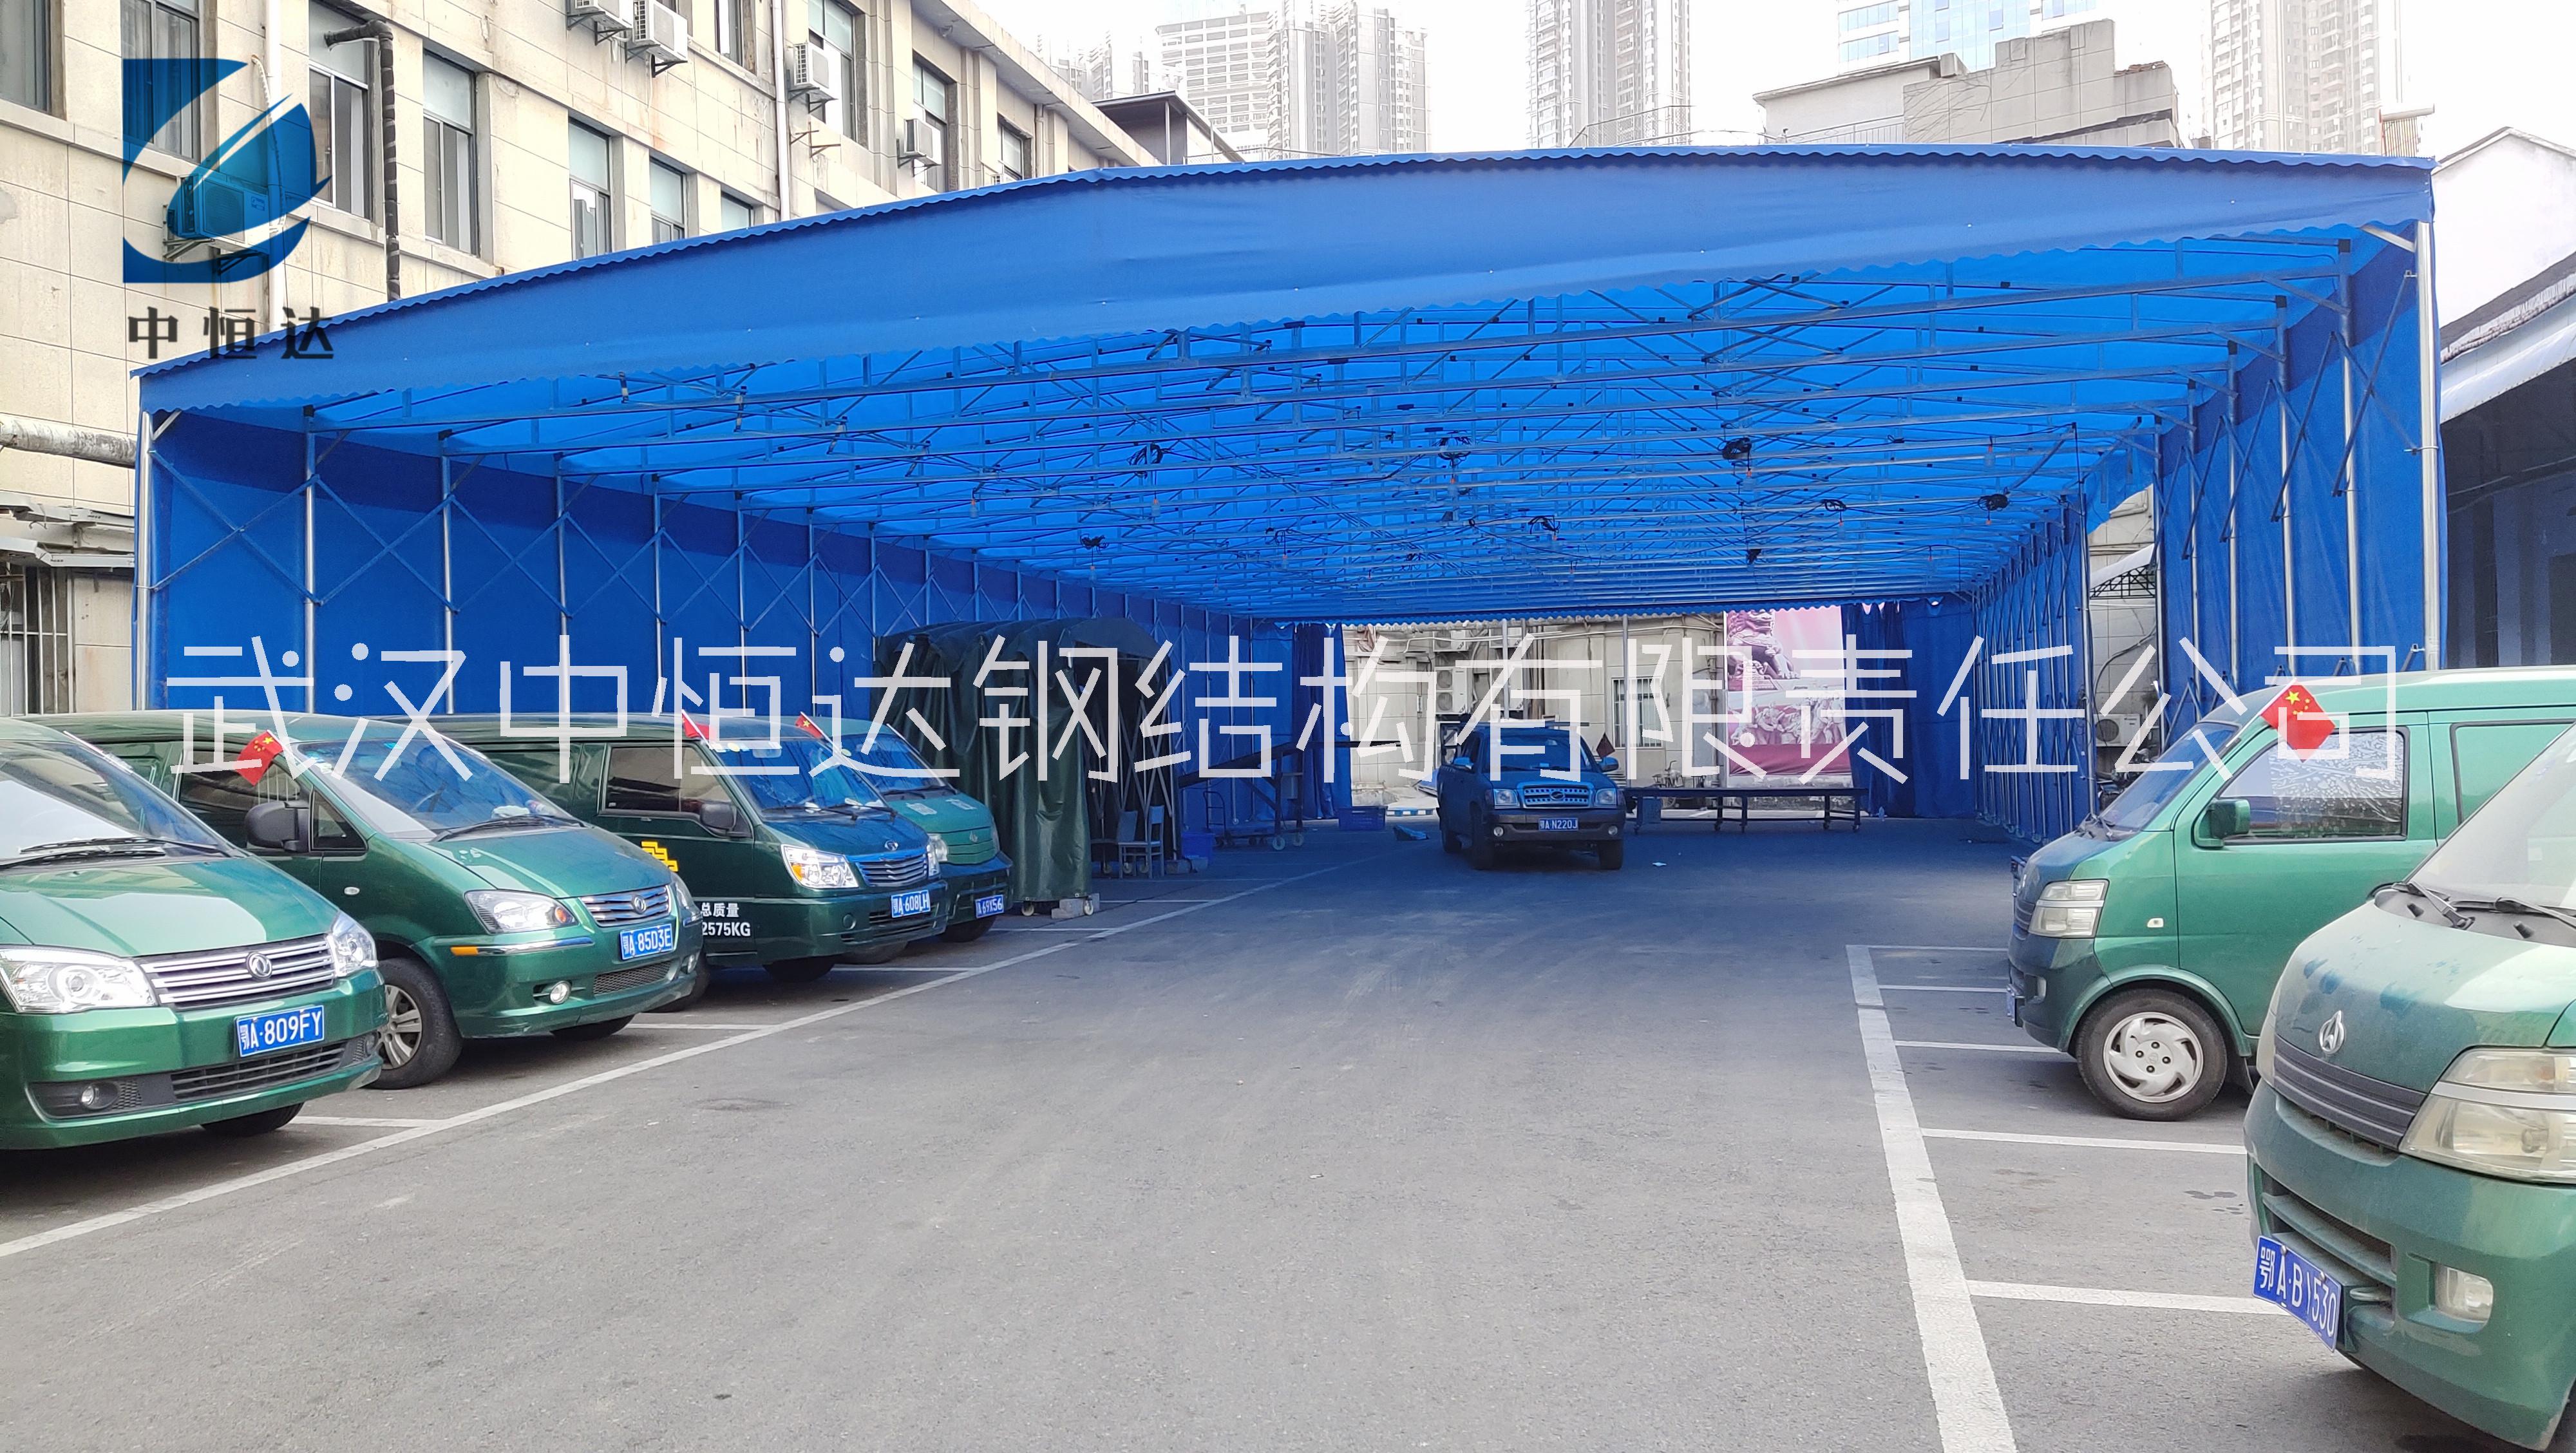 武汉中恒达推拉雨棚 雨棚价格造型   大型仓库帐篷棚   汽车雨篷